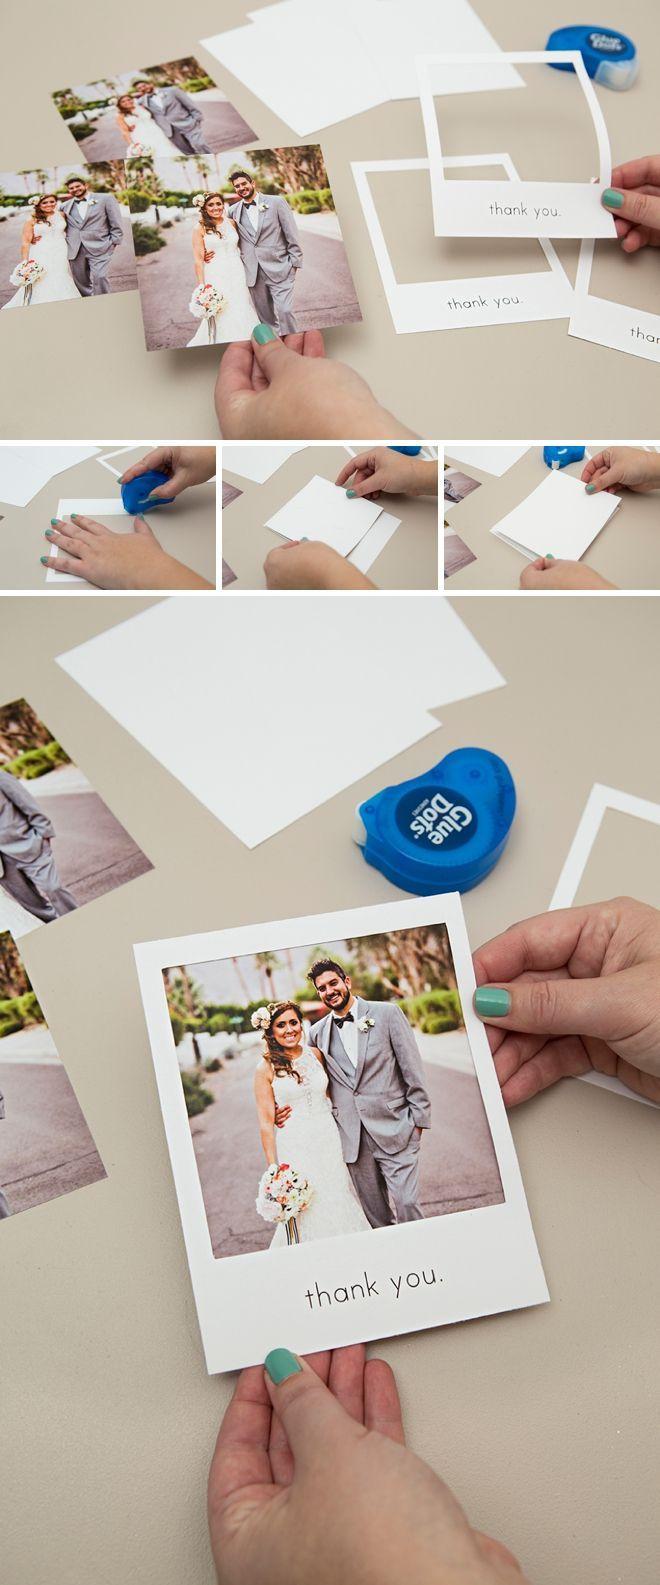 Wedding - Check Out These Adorable DIY "Polaroid" Photo Thank You Cards!